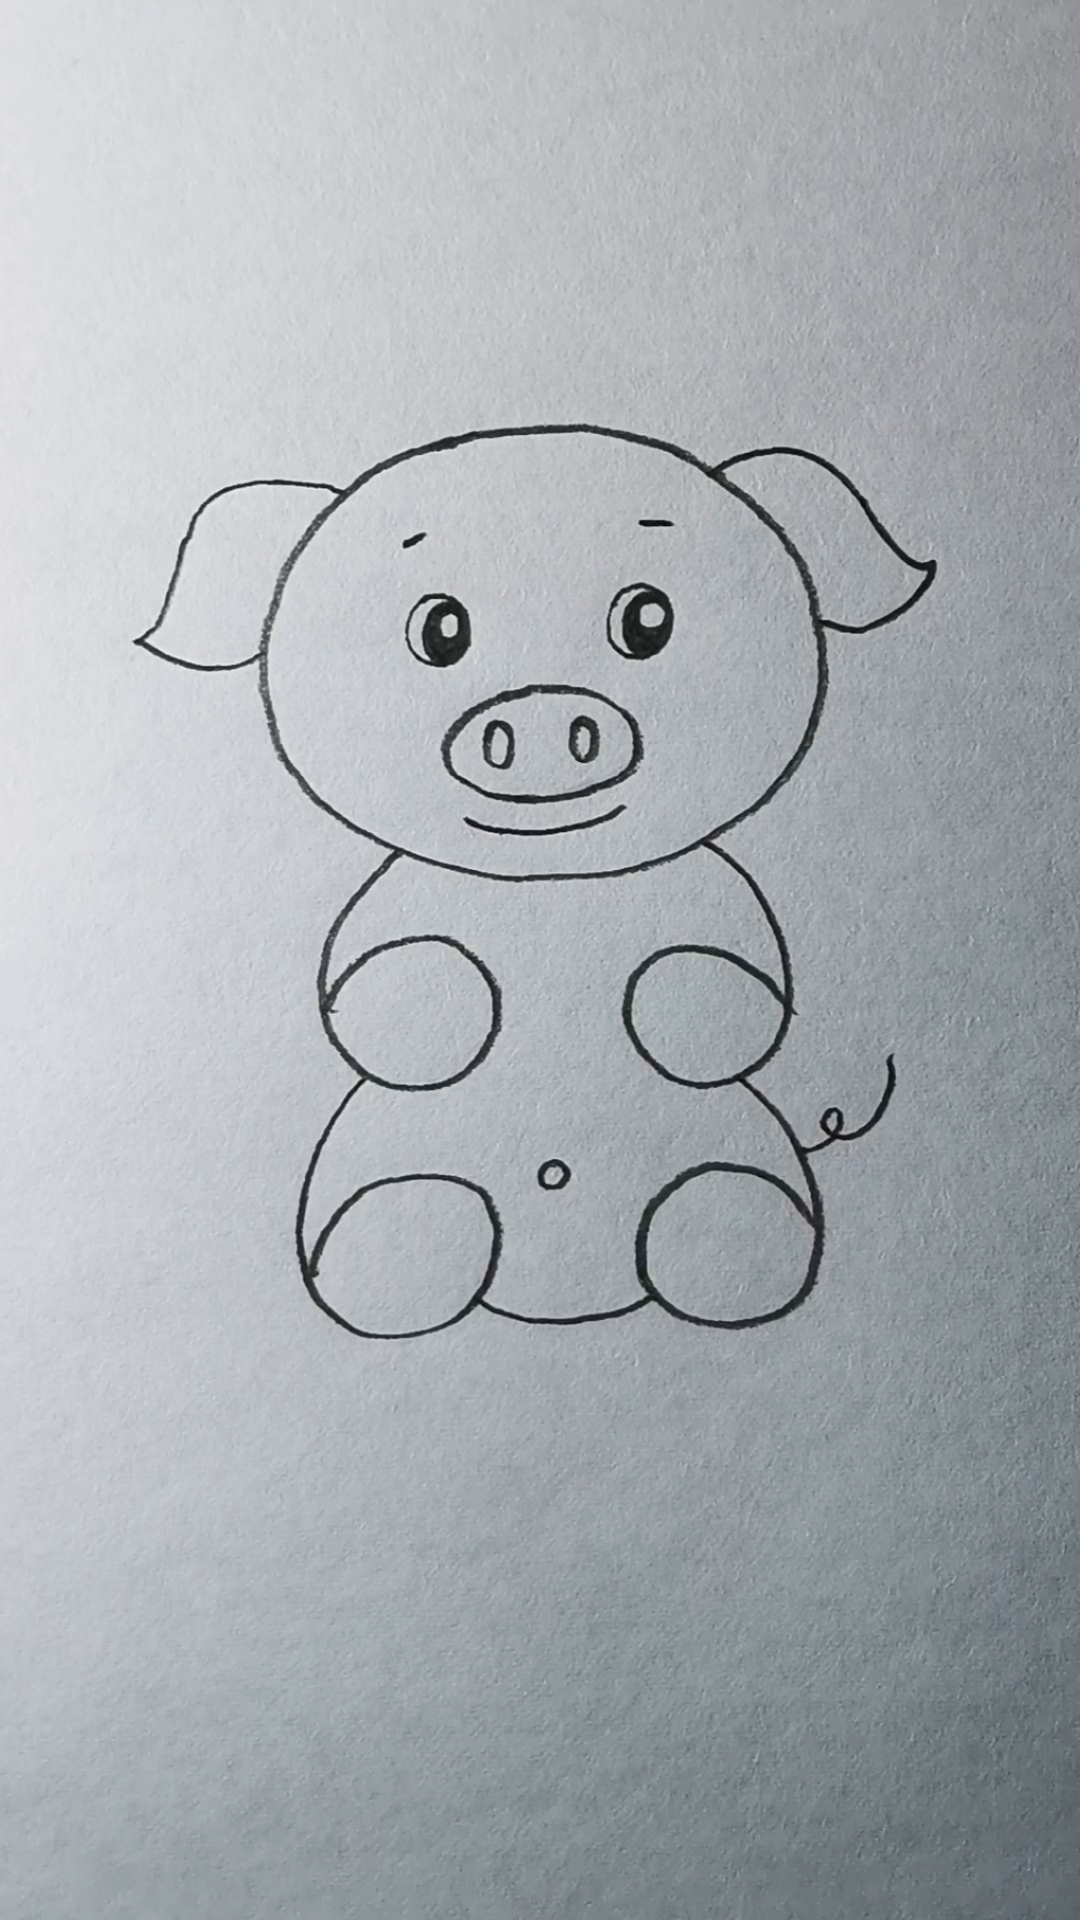 六一儿童节一起学画小胖猪!